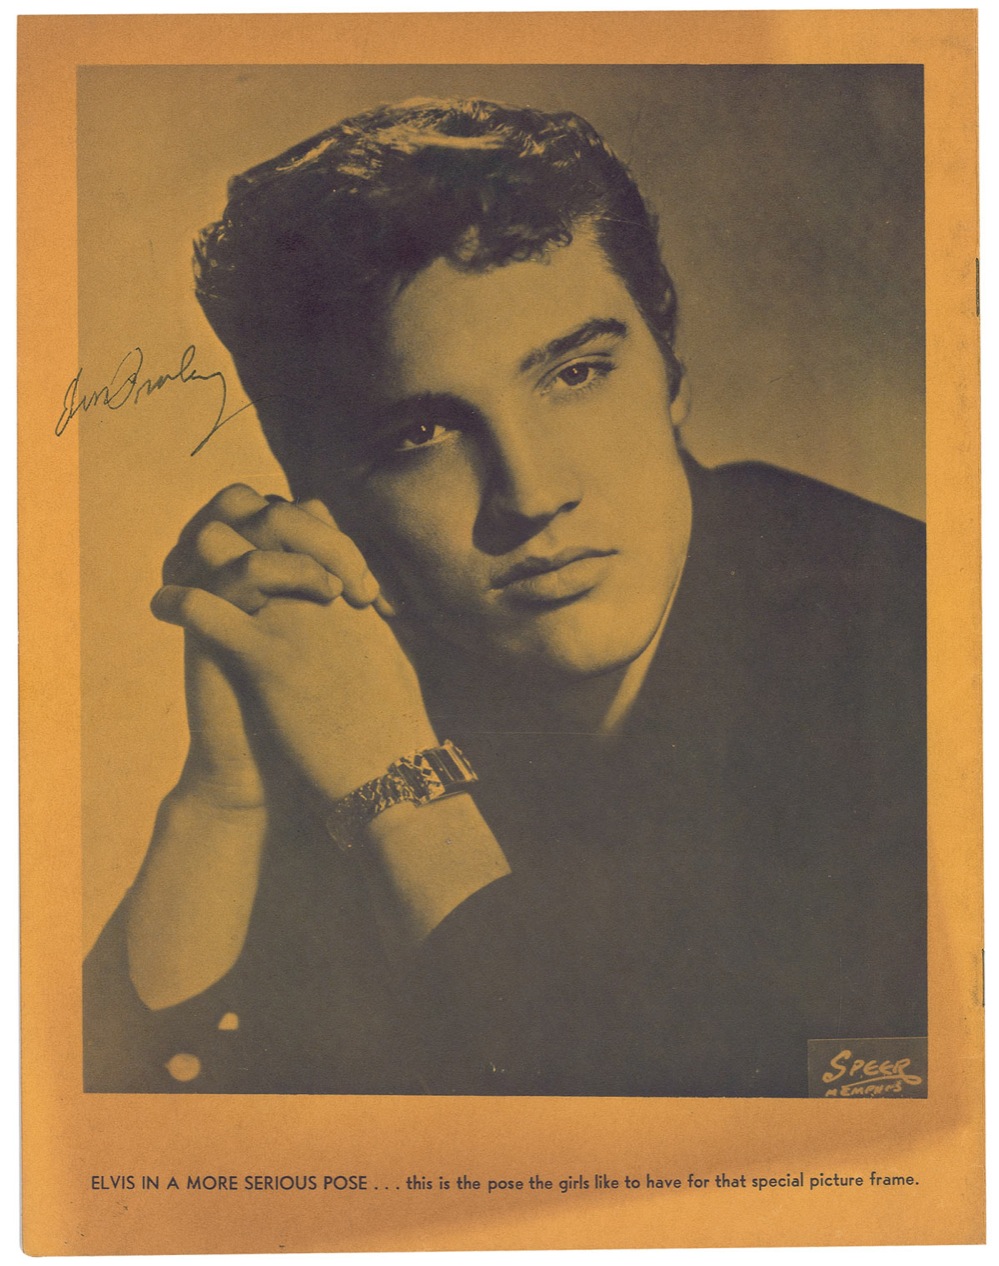 Lot #269 Elvis Presley